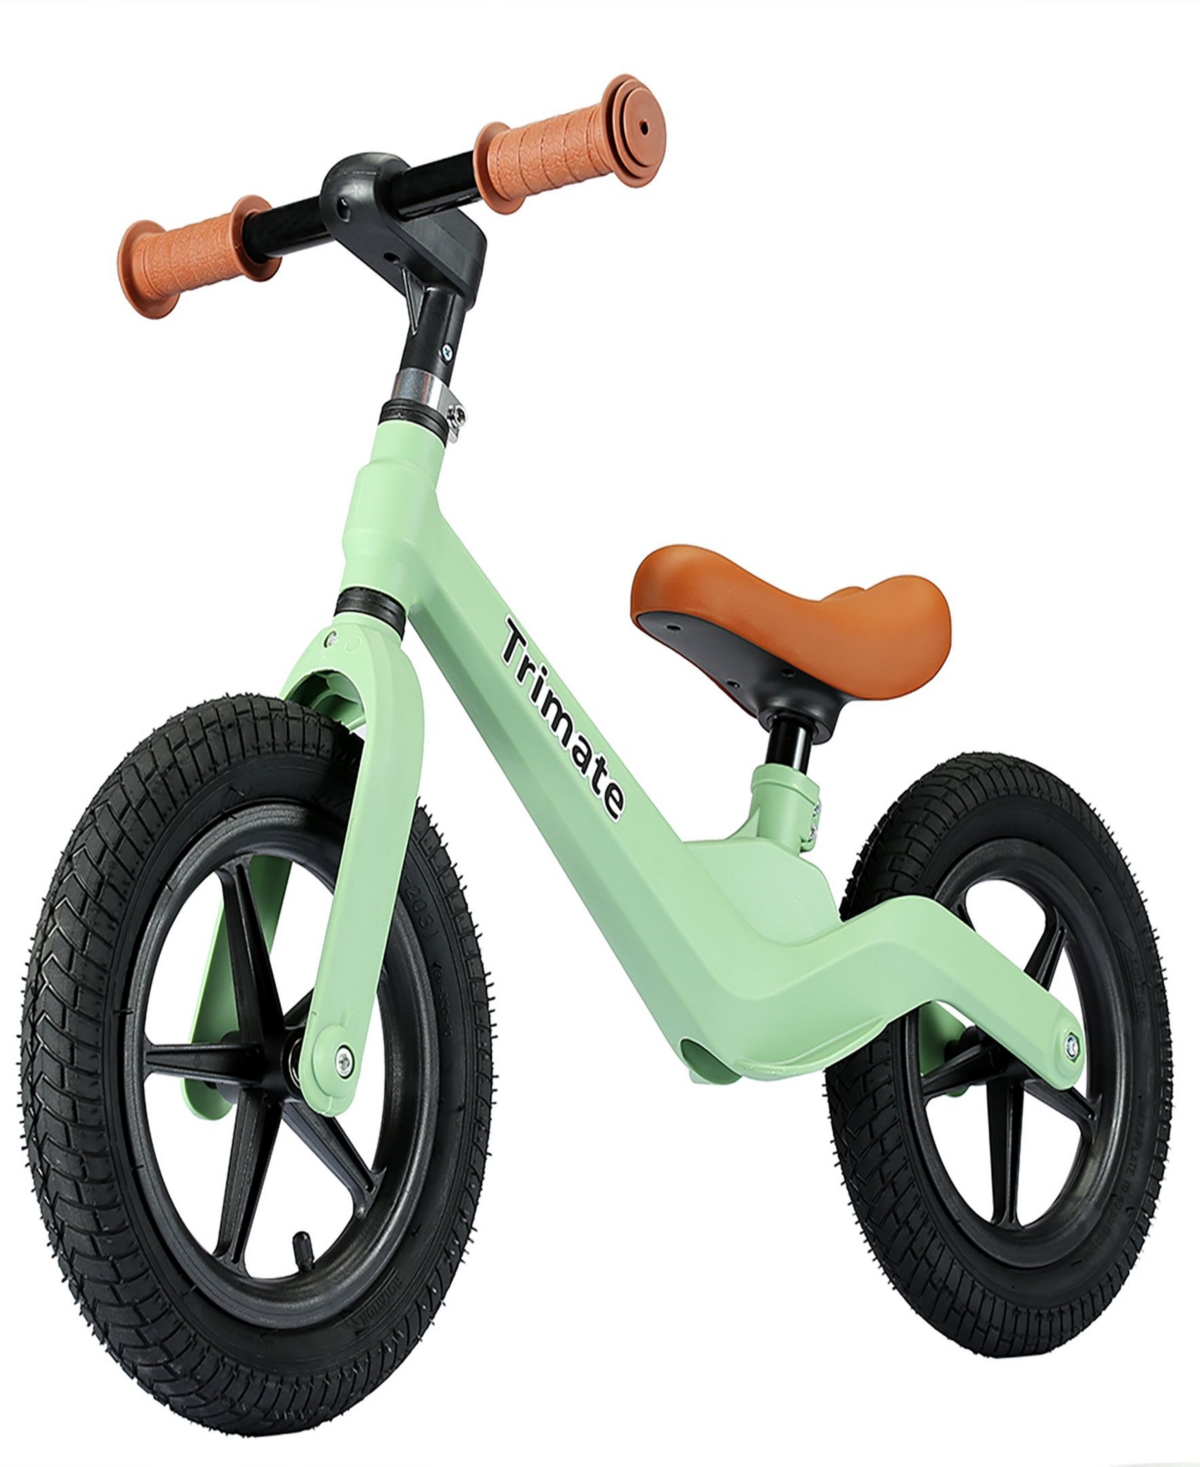 Trimate Kids' Green Toddler Balance Bike In Multi